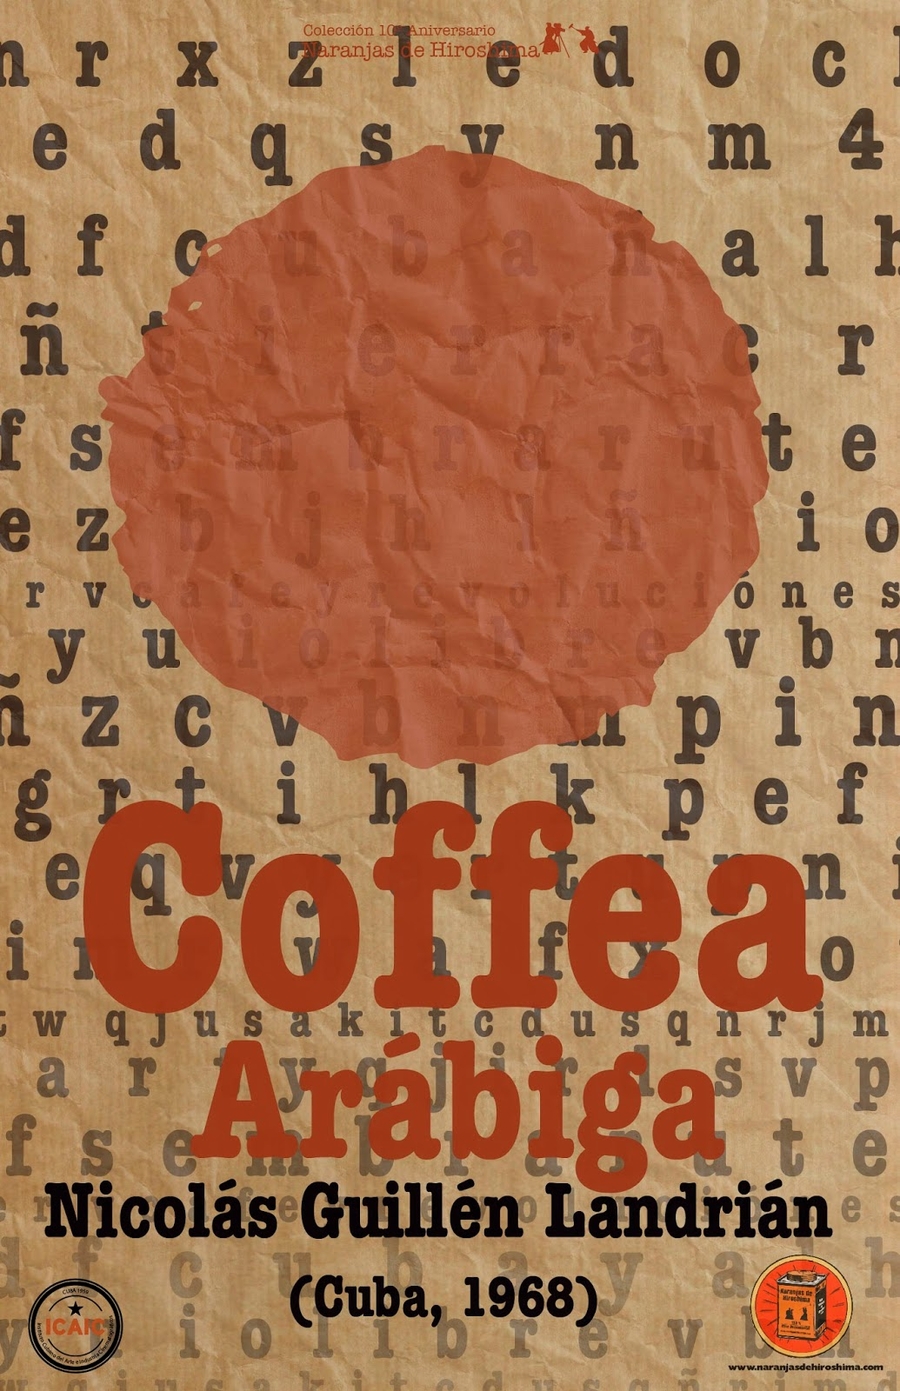 Coffea Arábiga es una de las obras cumbres de la filmografía del documentalista Nicolás Guillén Landrián.